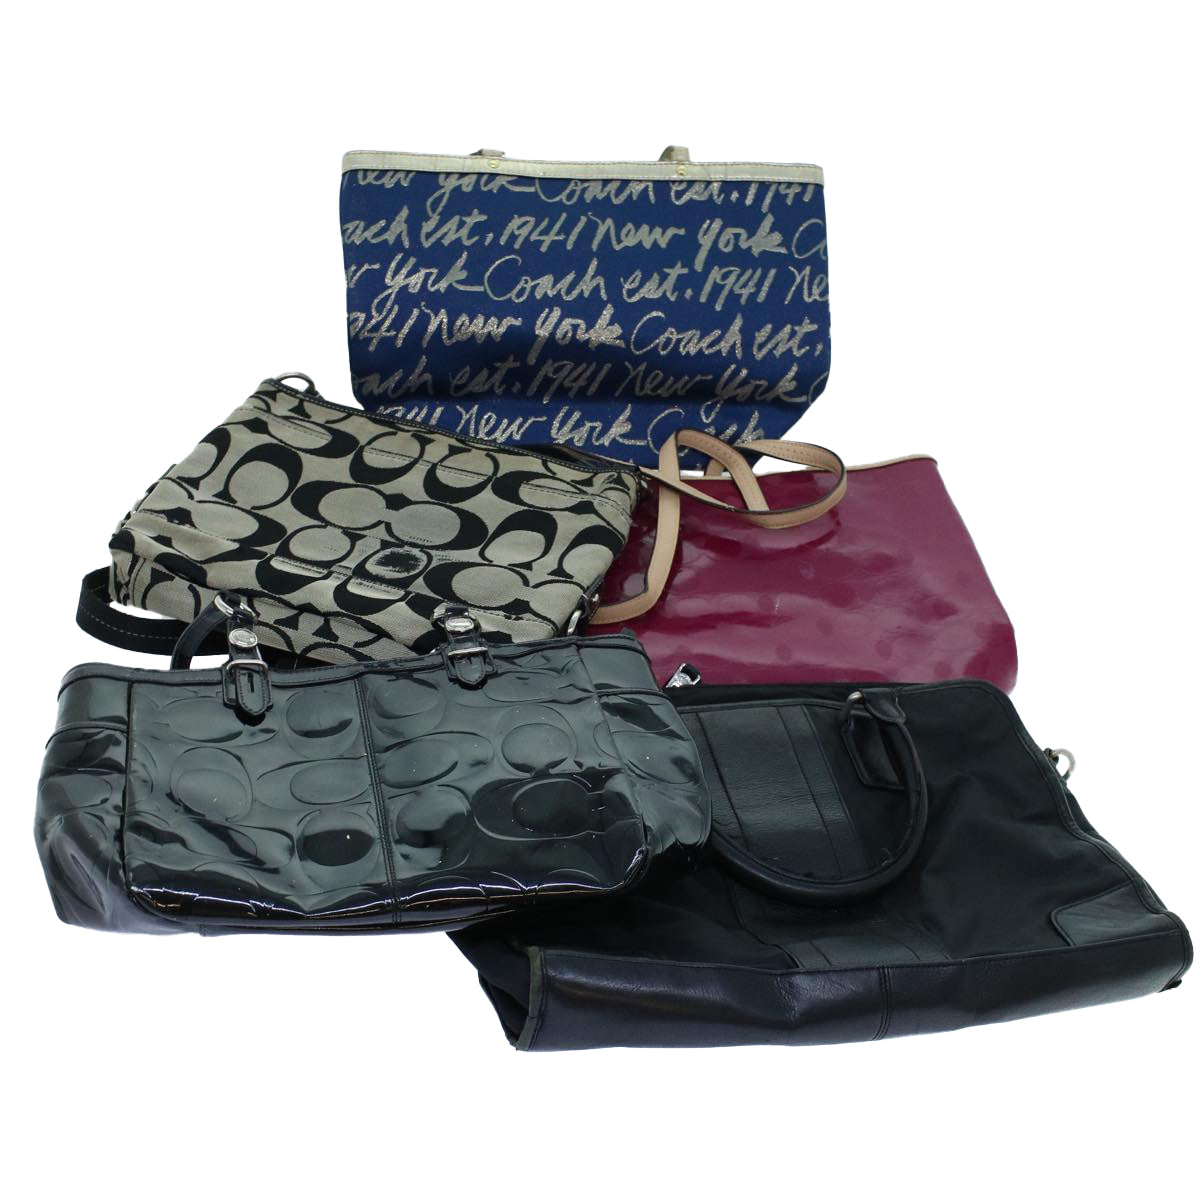 Coach Signature Shoulder Bag Canvas Leather Patent 5Set Beige Pink Auth ar10256 - 0